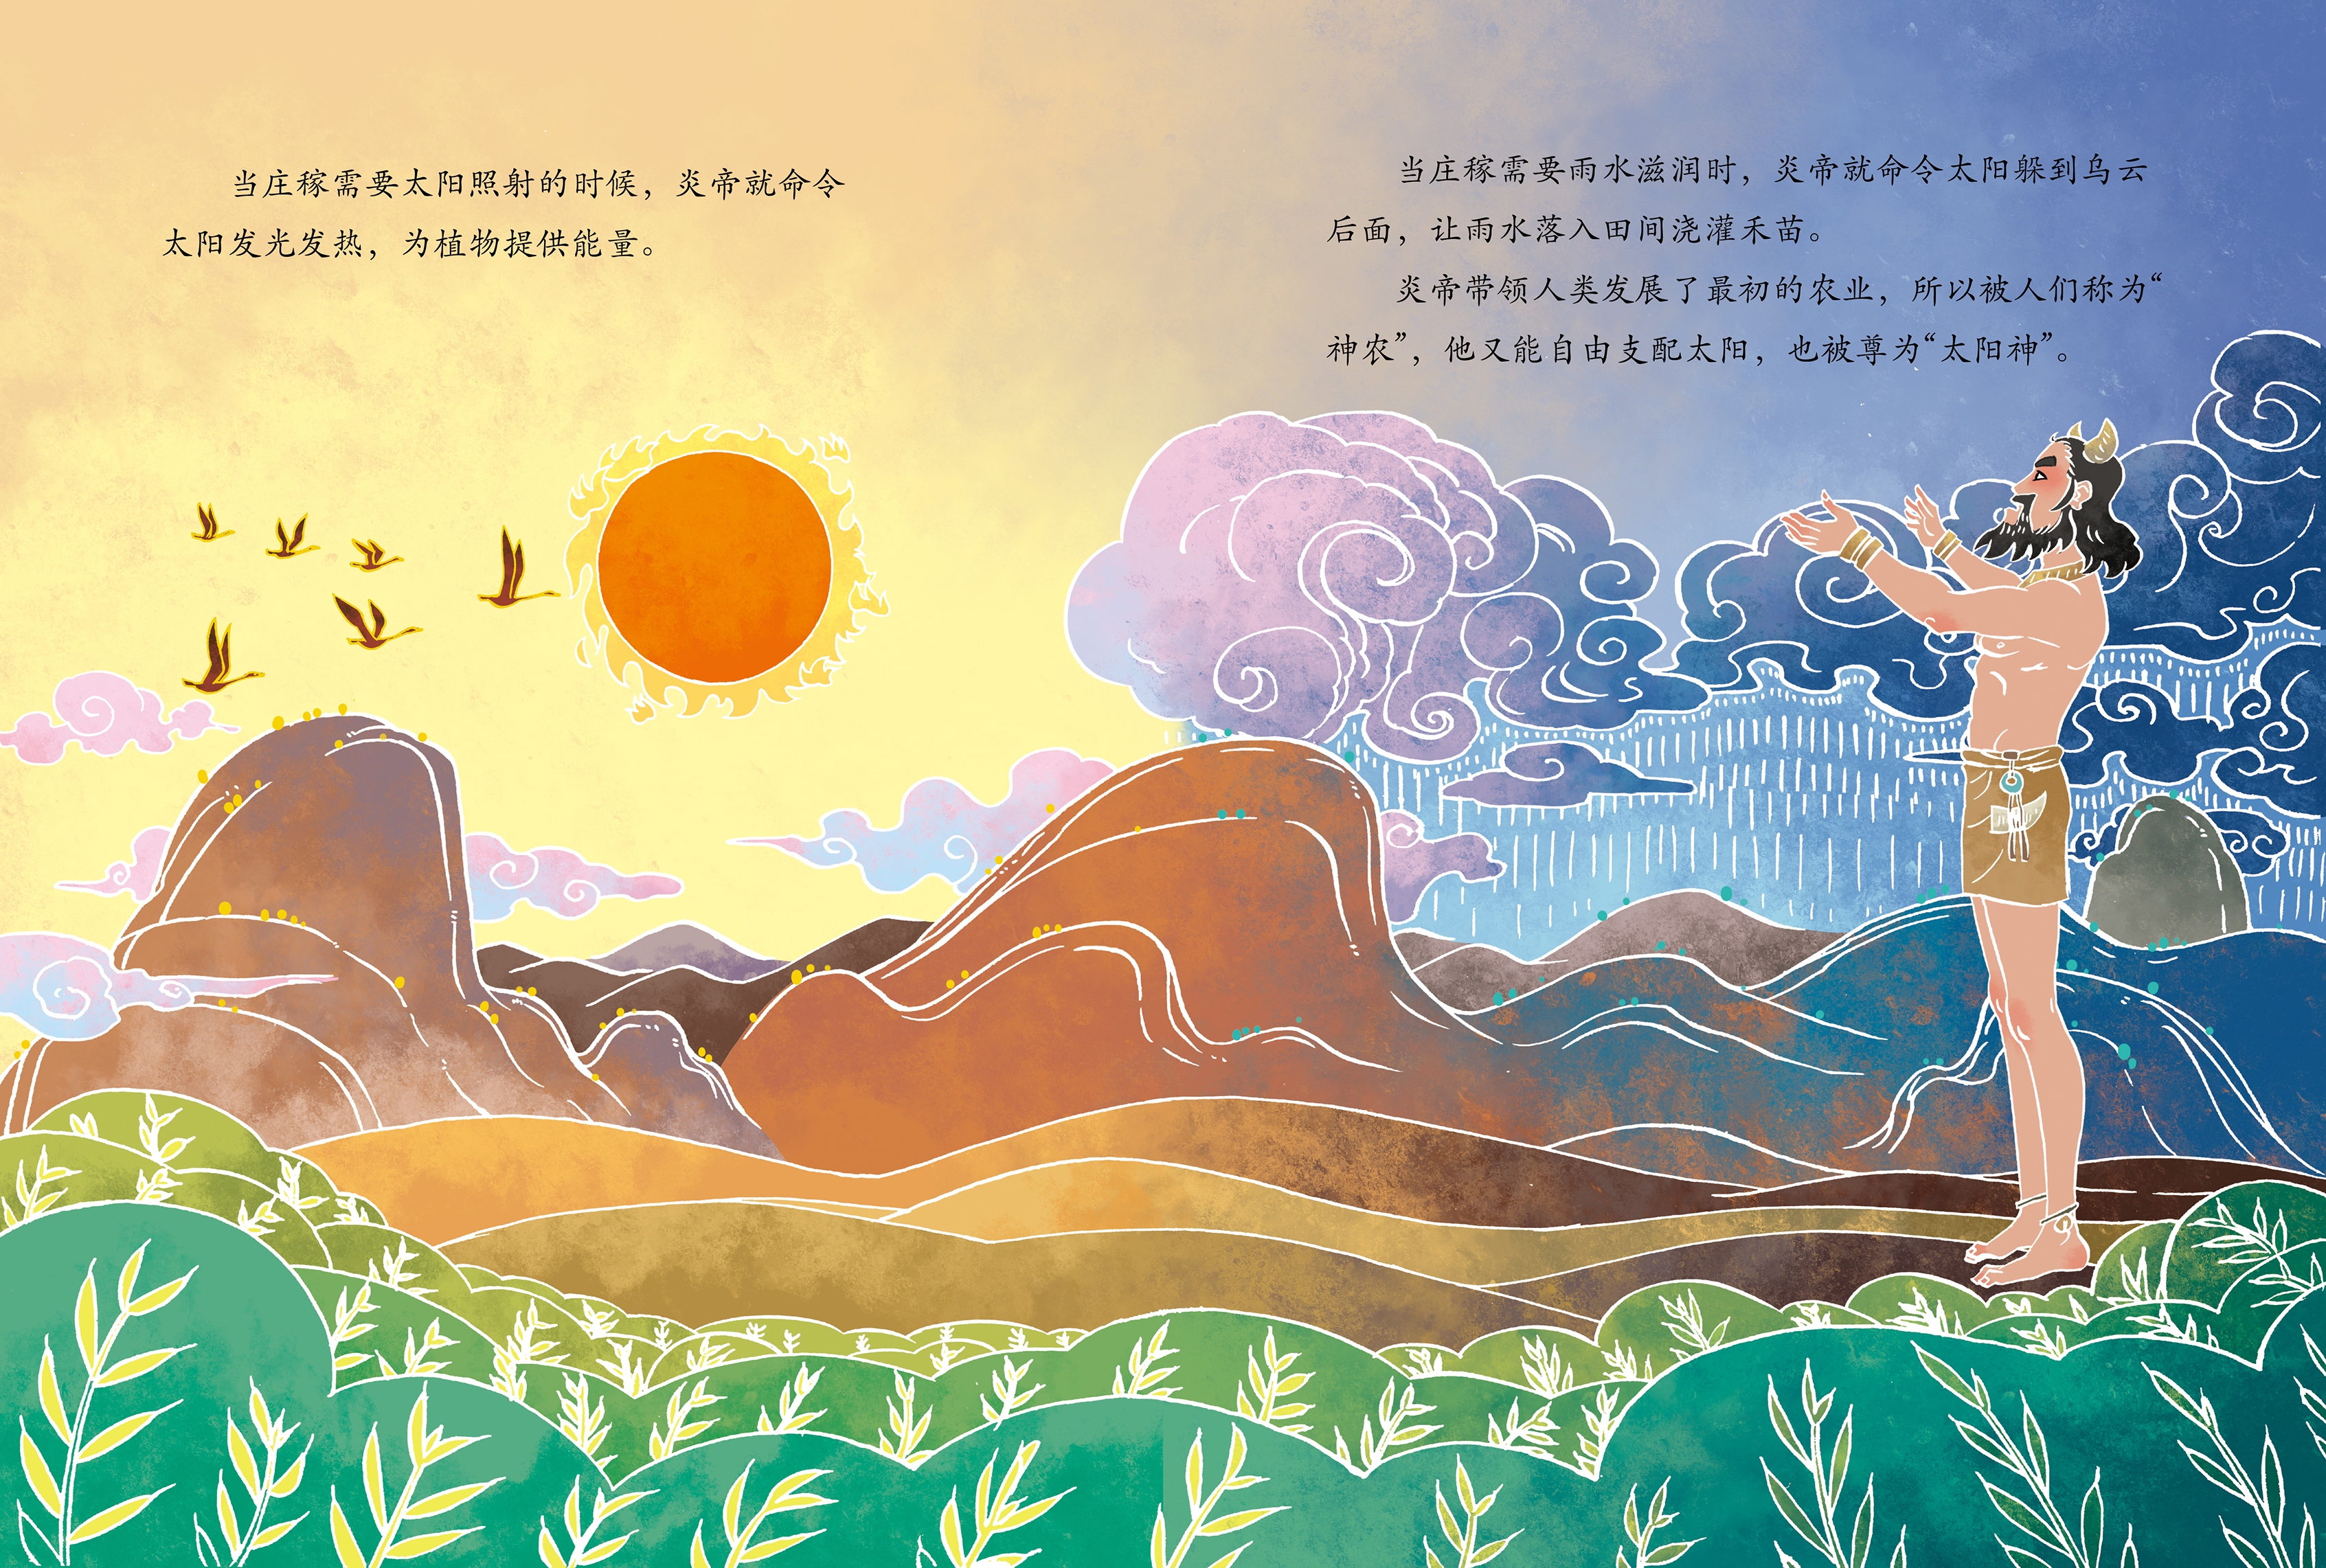 中国神话故事系列《神农尝百草》